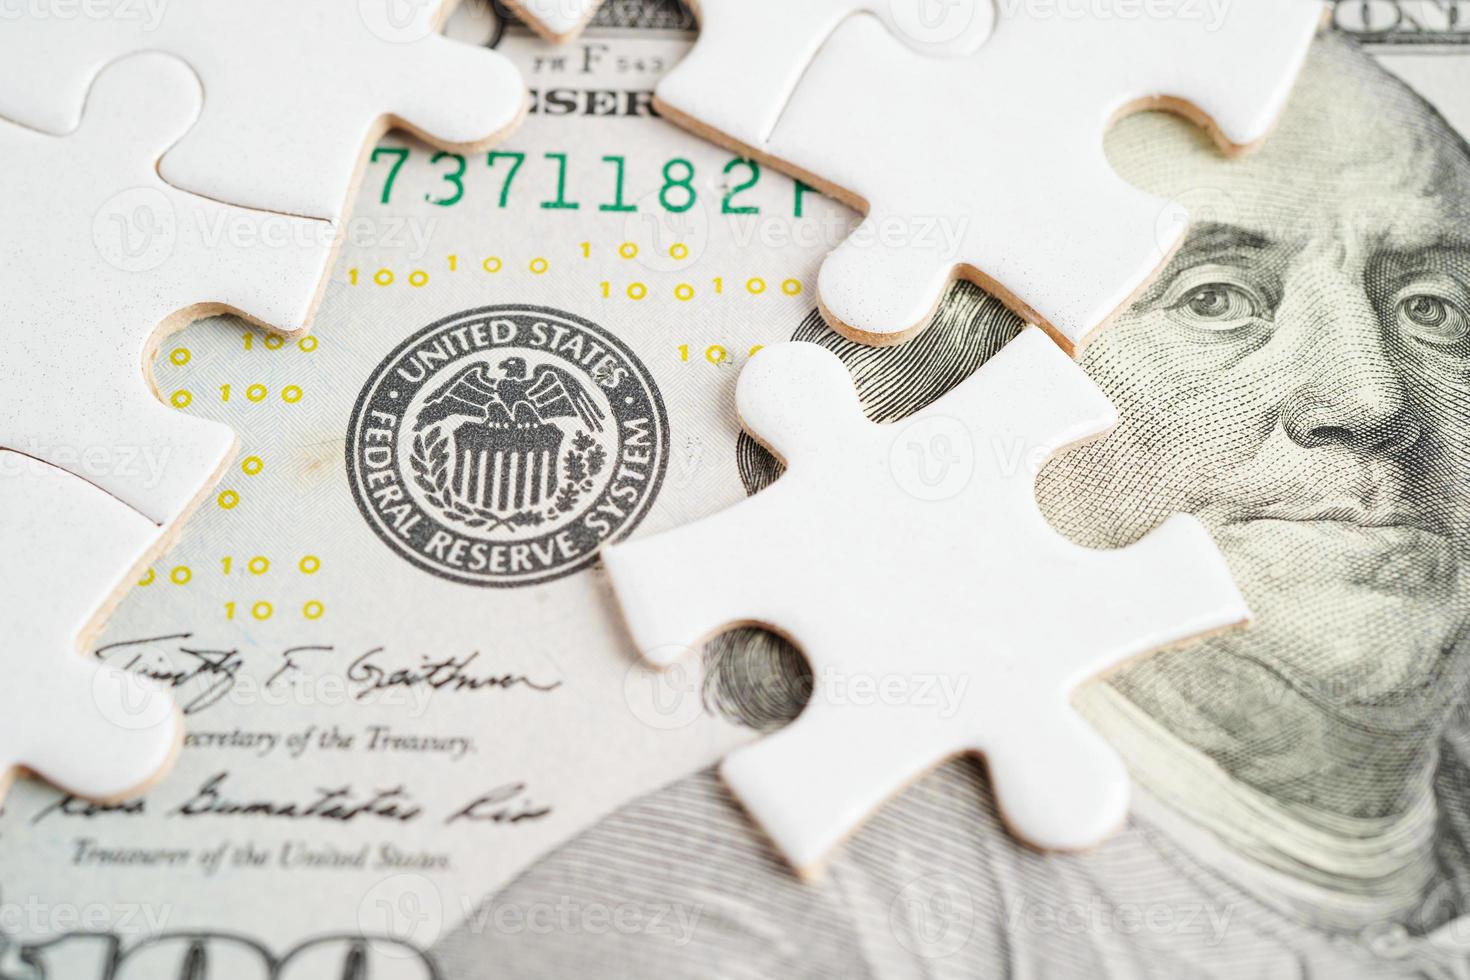 fütterte das Federal Reserve System mit Puzzlepapier, das Zentralbanksystem der Vereinigten Staaten von Amerika. foto